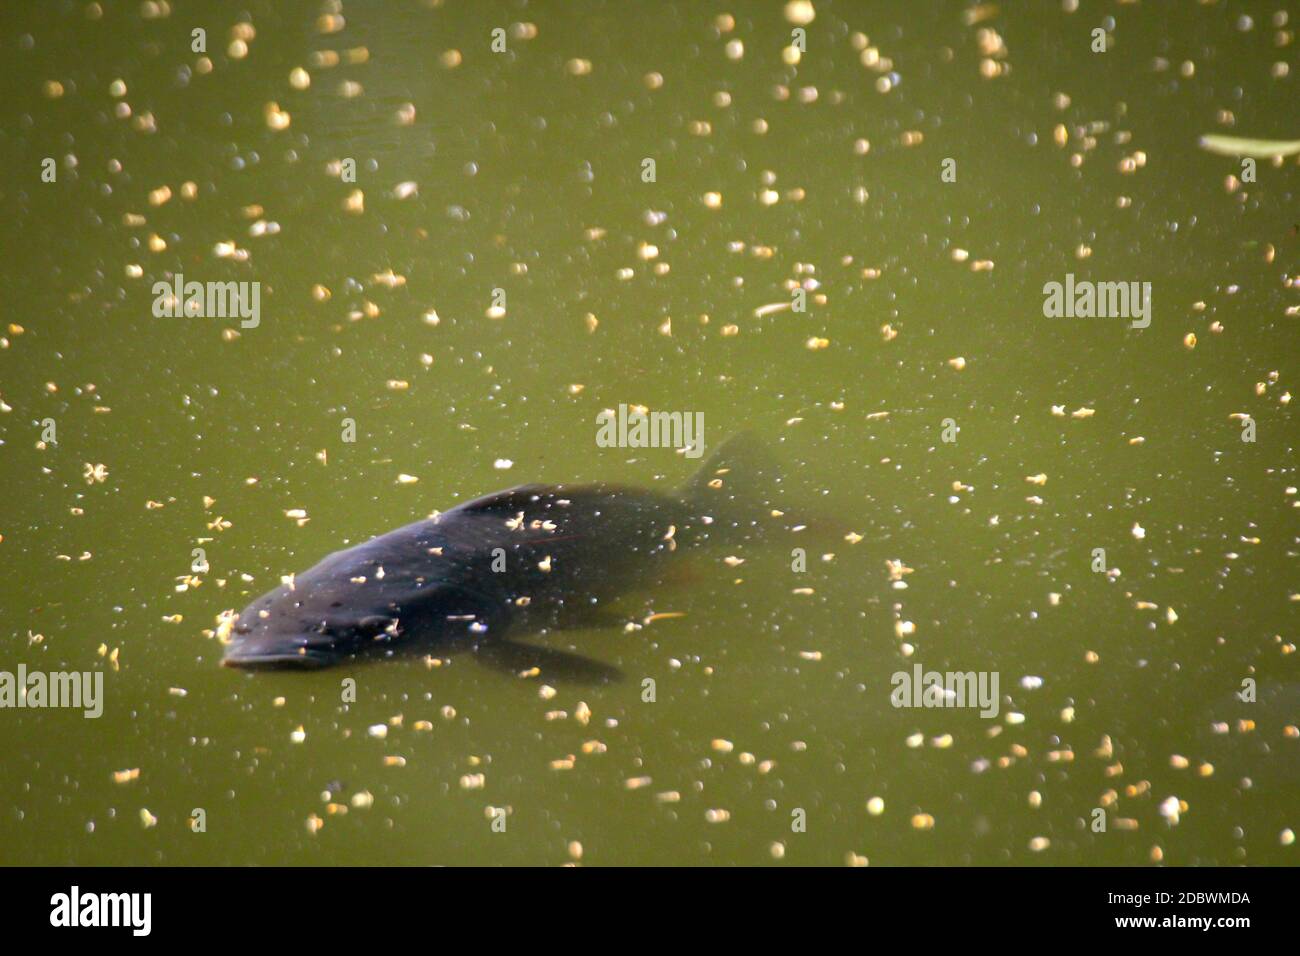 Un pez, la carpa nadan en la superficie de un estanque. Foto de stock